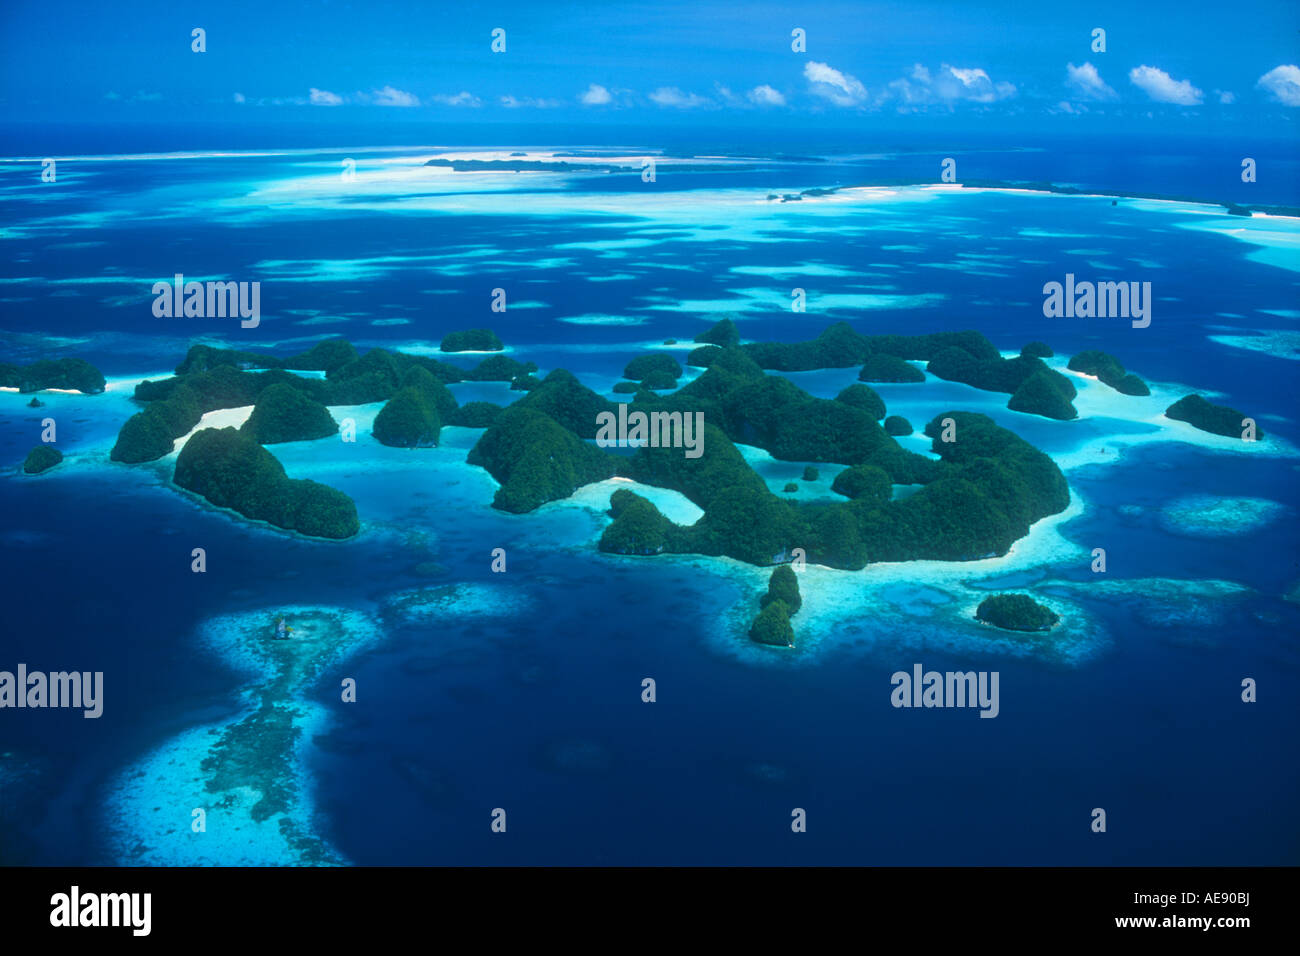 Eine Luftaufnahme von Palaus Rock Island ist unvergesslich.  Diese Kalksteininseln sind in ein komplexes Labyrinth erodiert. Stockfoto